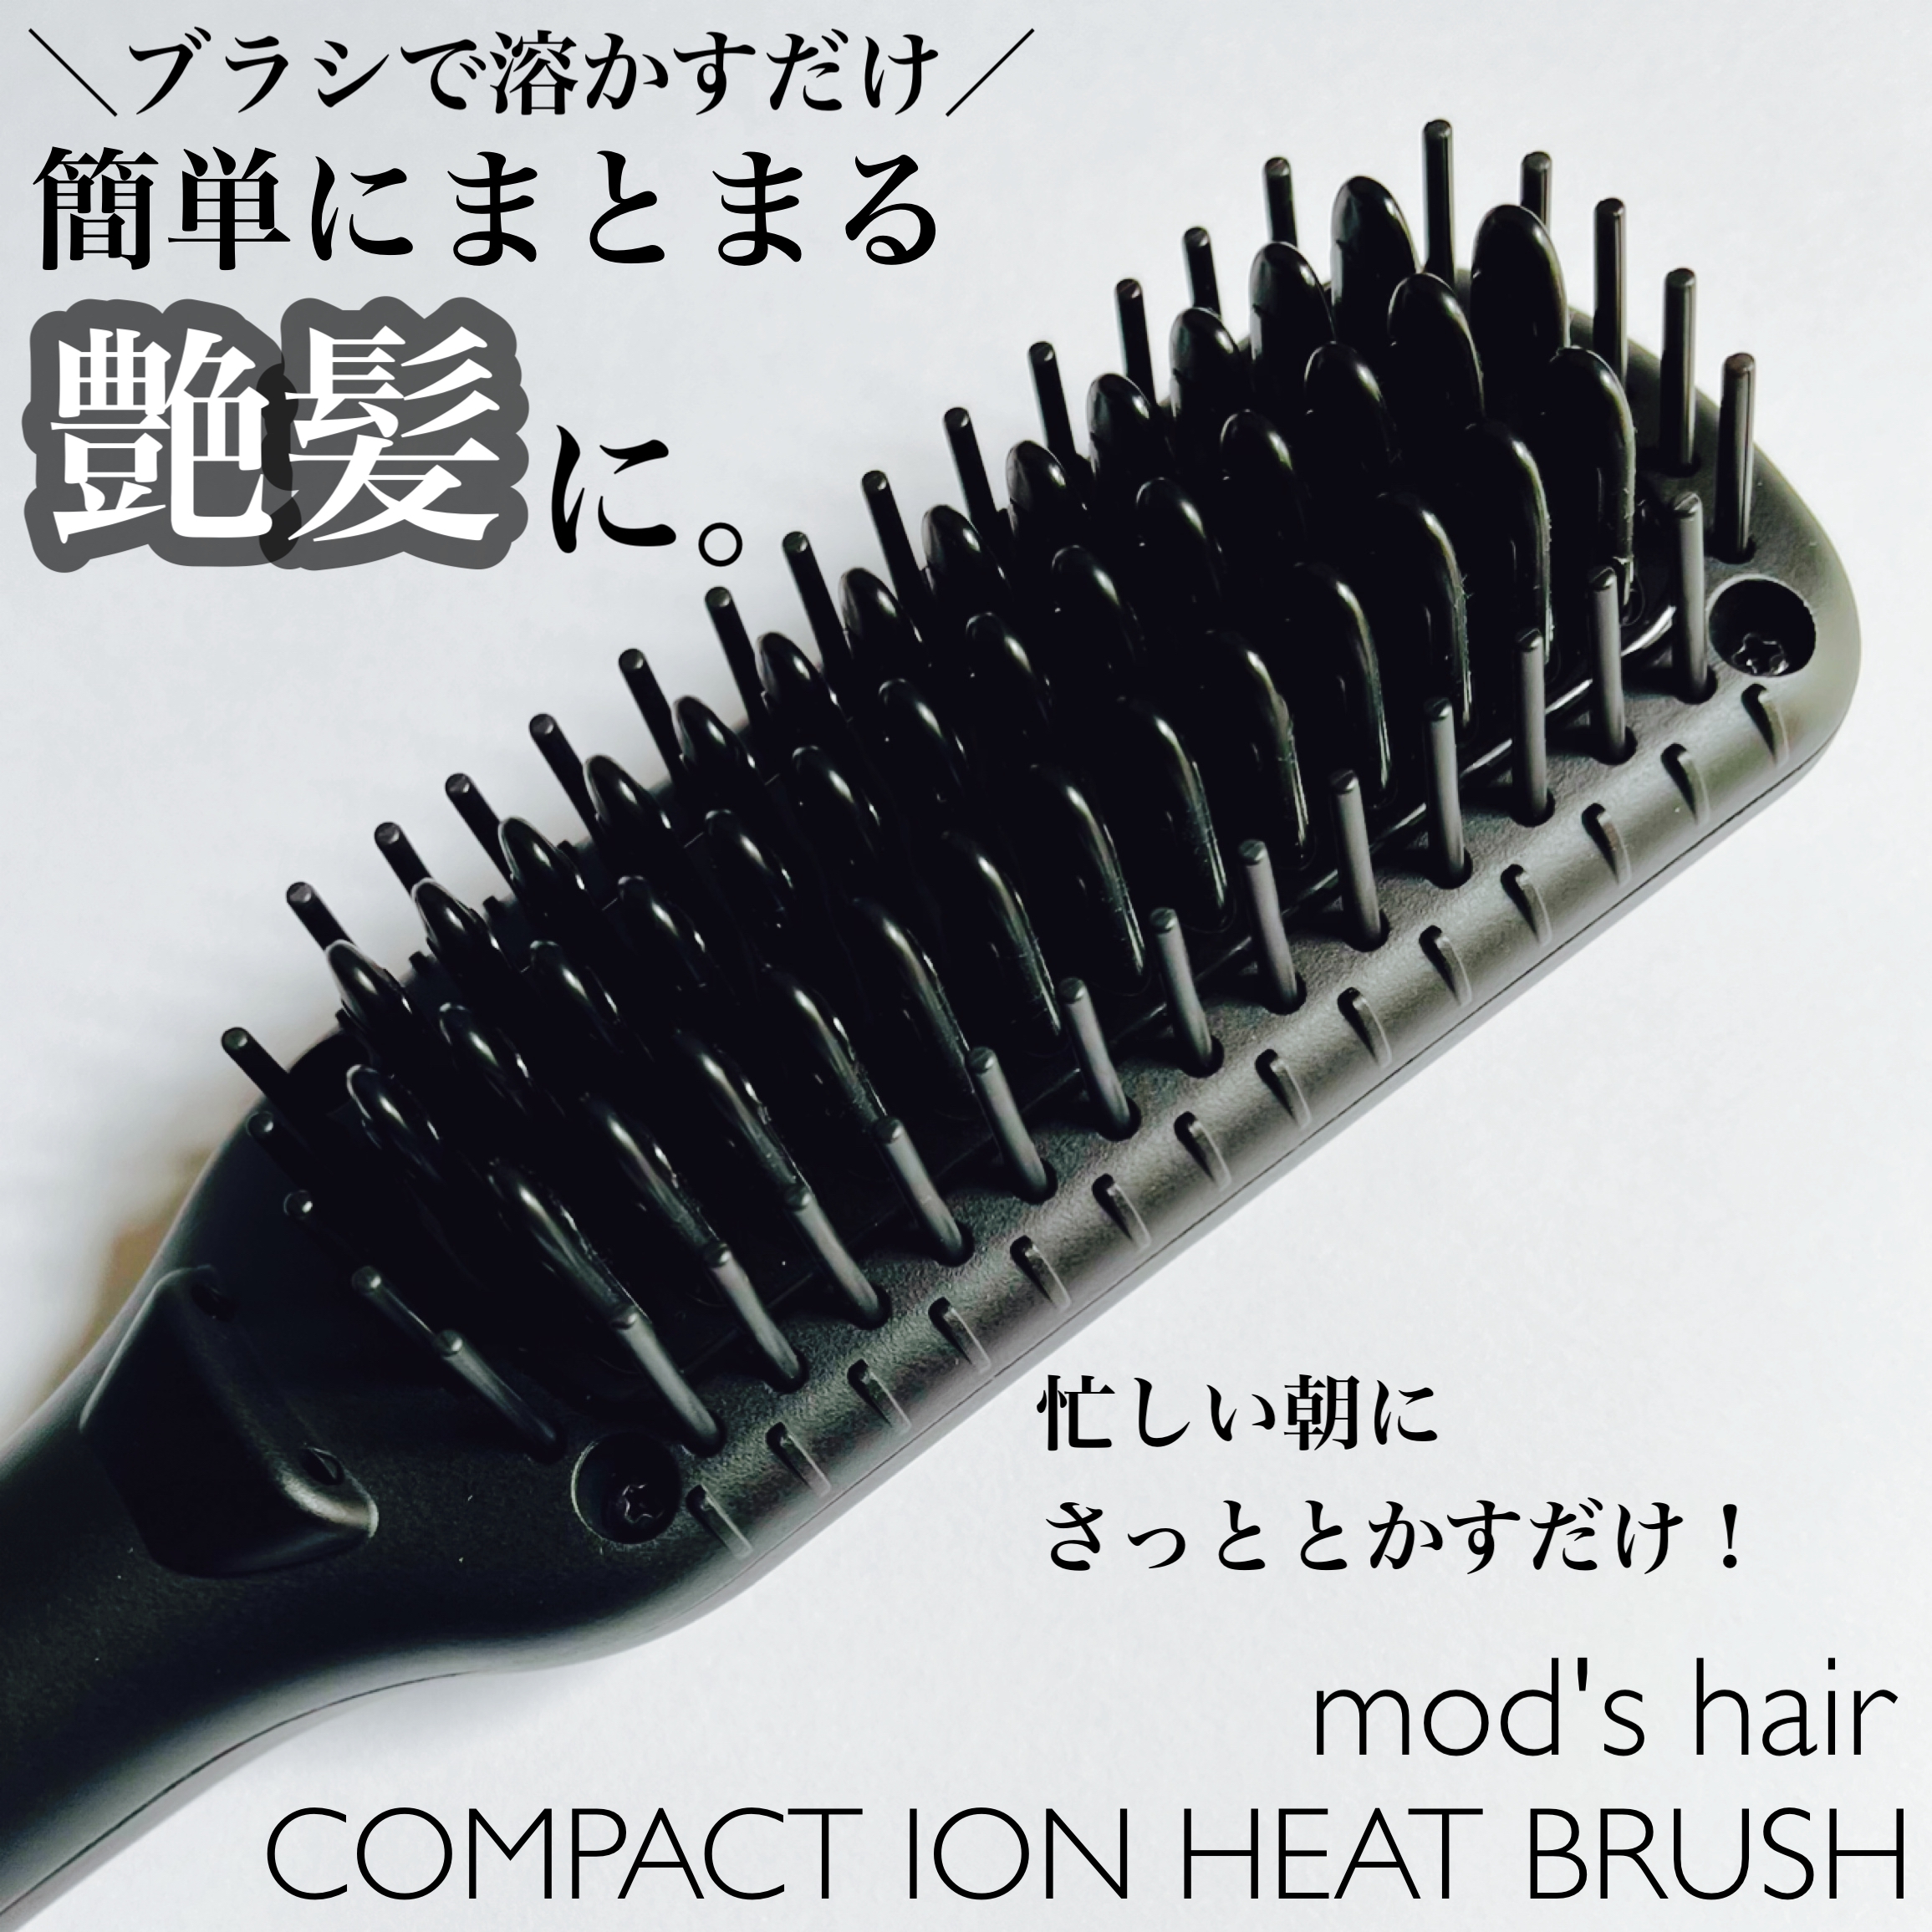 mod’s hair(モッズ・ヘア) スタイリッシュ コンパクトイオンヒートブラシ MHB-3040の良い点・メリットに関するsachikoさんの口コミ画像1